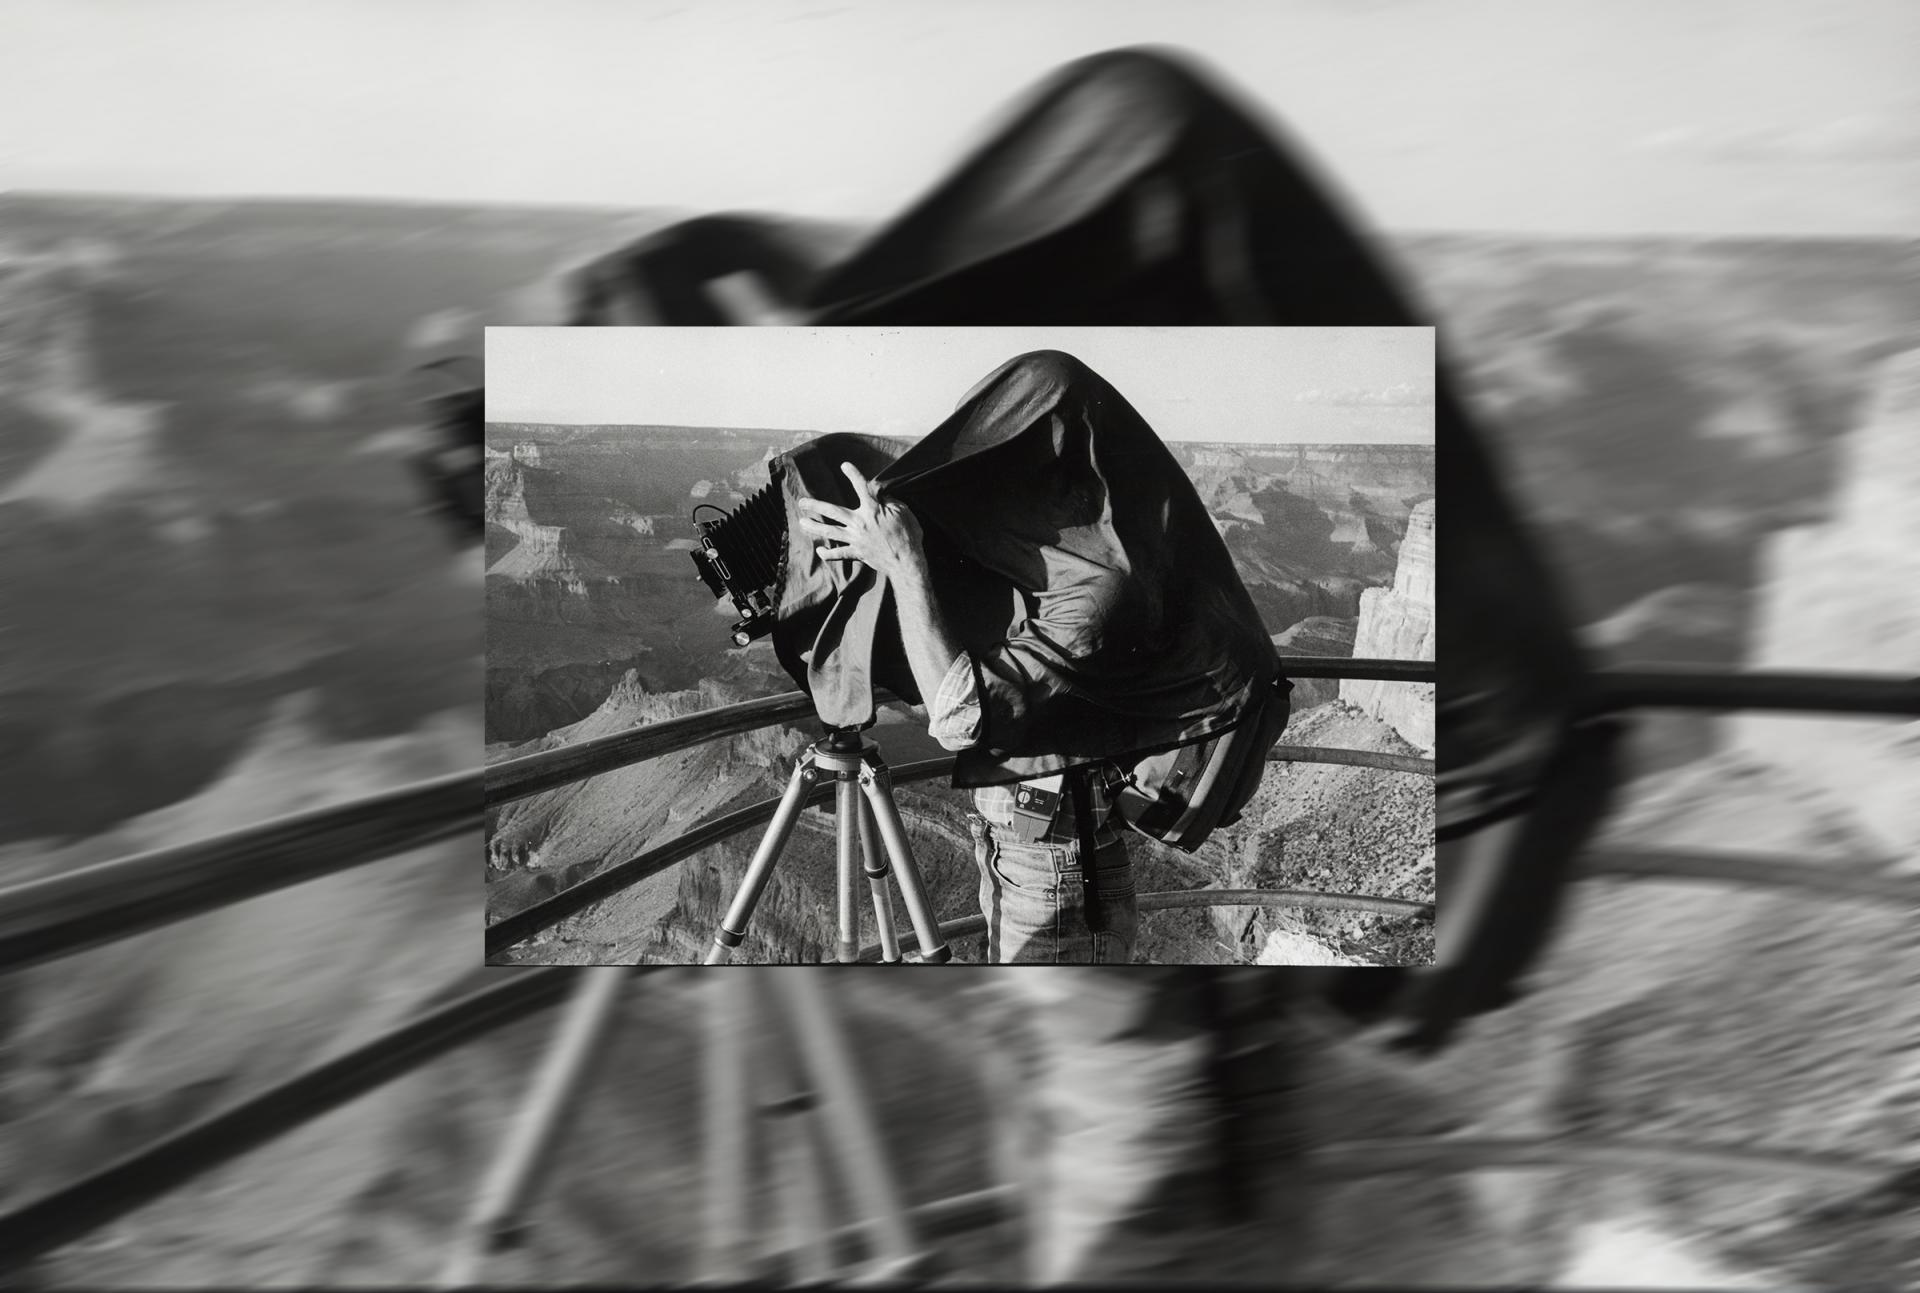 François le Diascorne, Le photographe du Grand Canyon, 1983